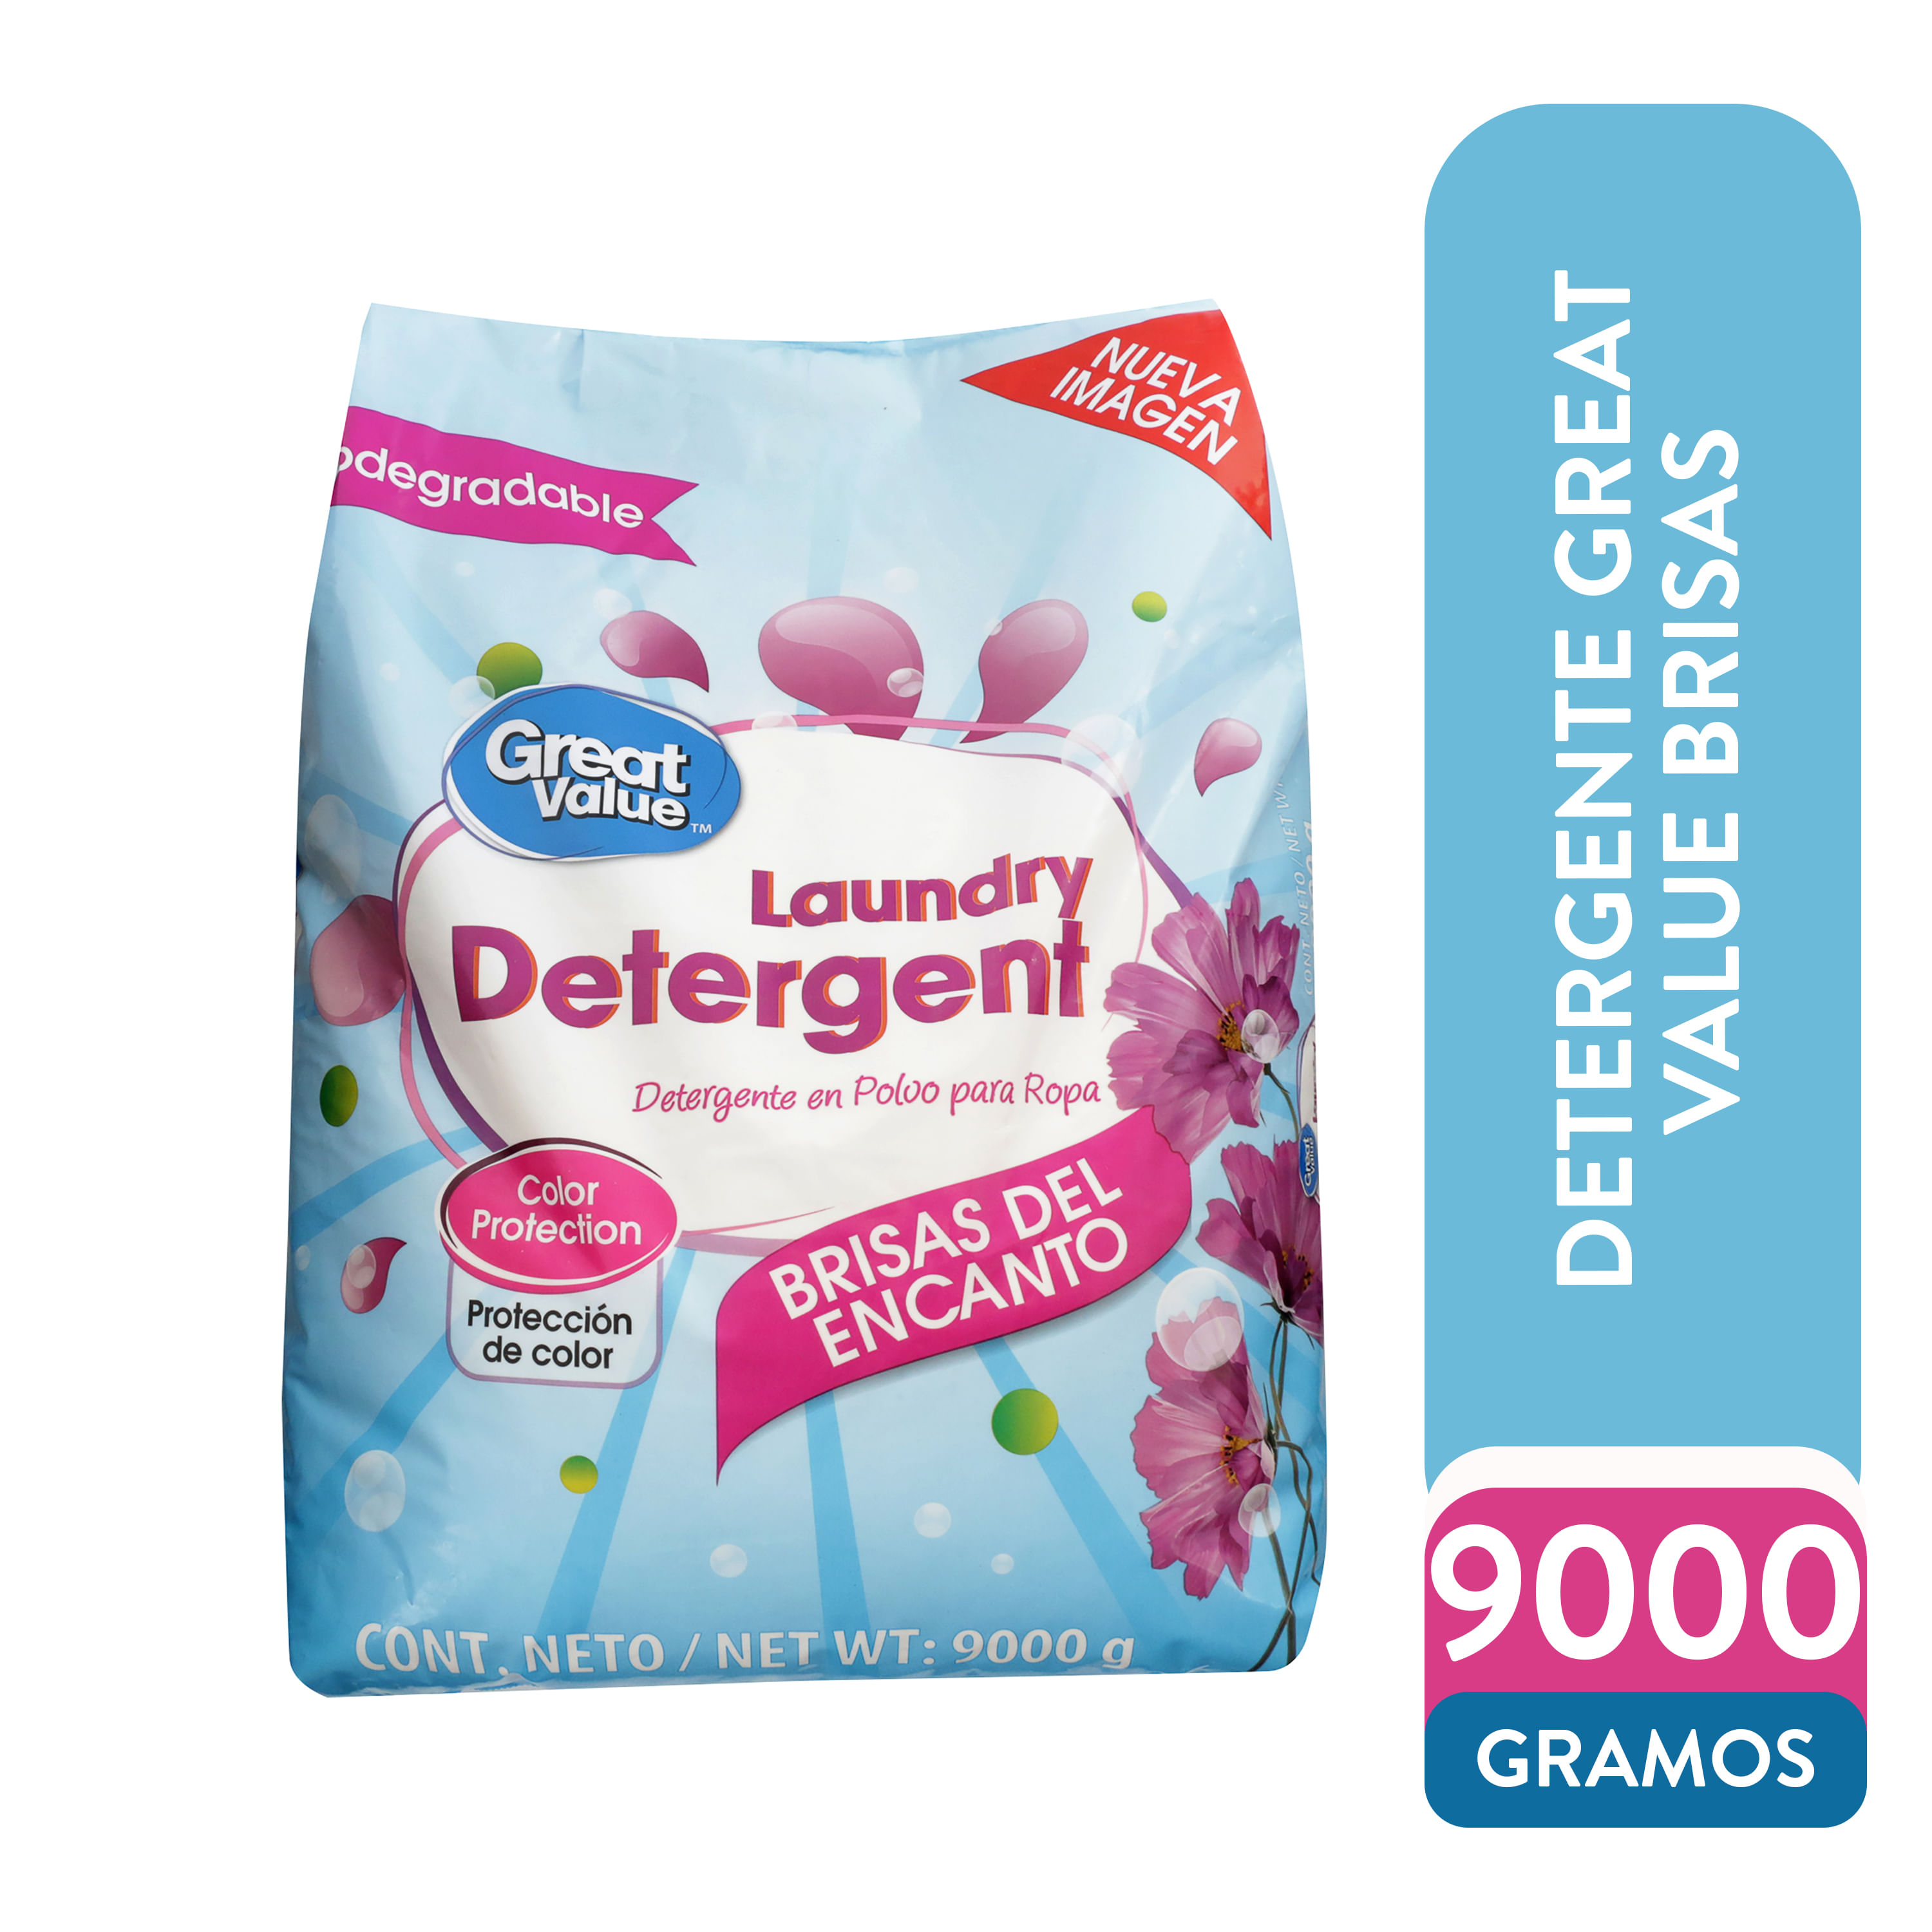 Detergente-Great-Value-Brisas-9000gr-1-31096